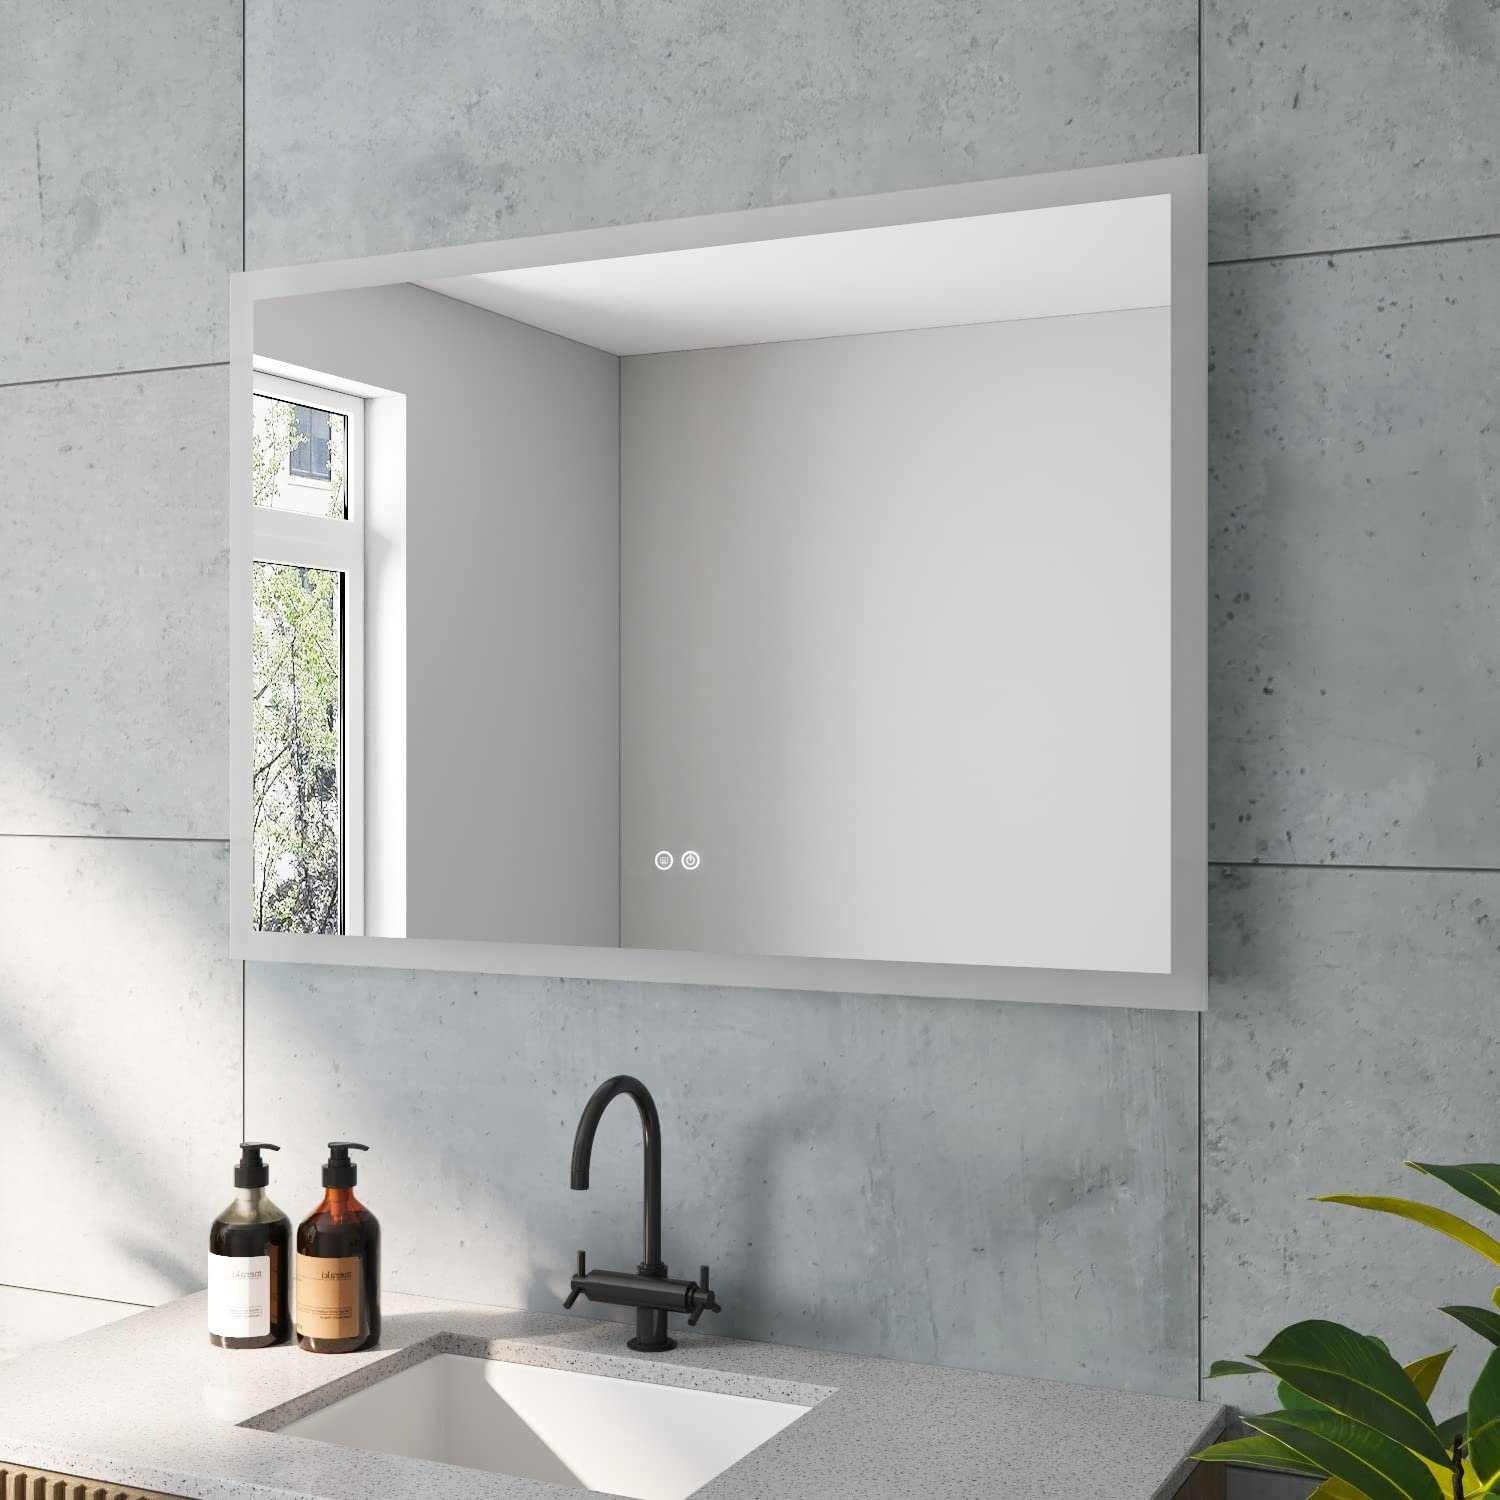 aqua batos Badspiegel Badezimmerspiegel Badspiegel Led Spiegel mit  Beleuchtung Lichtspiegel, 100x70cm Kaltweiß 6400K Anti-beschlag IP44  Energiesparend